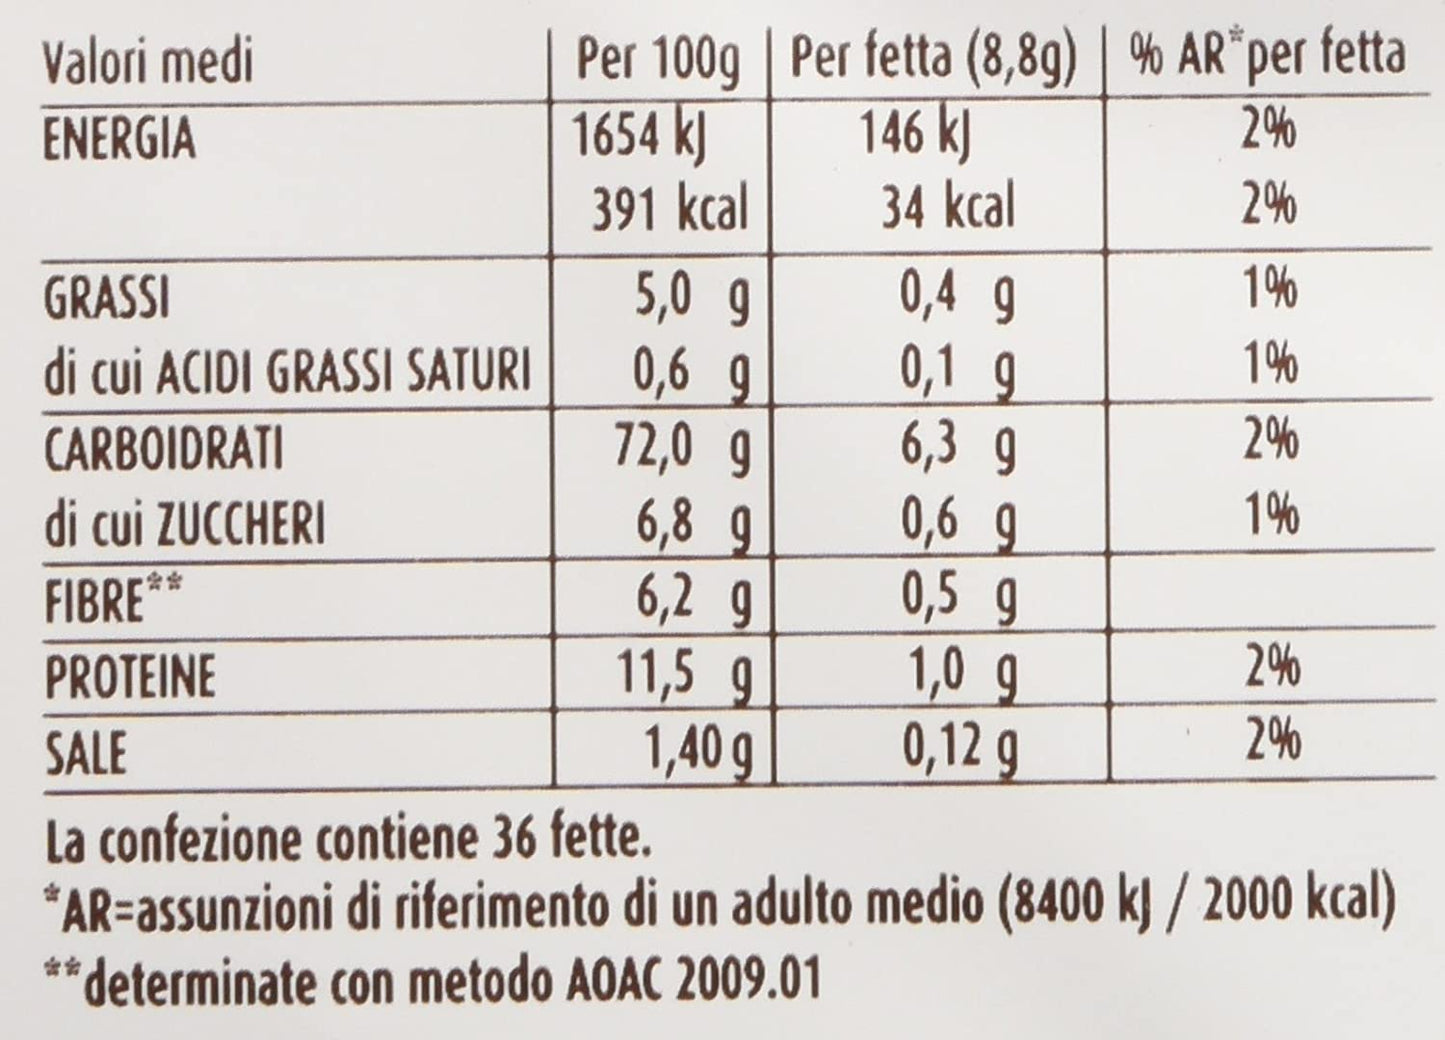 Mulino Bianco - Fette biscottate "Le dorate", 36 fette - 8 pezzi da 315 g [2520 g]